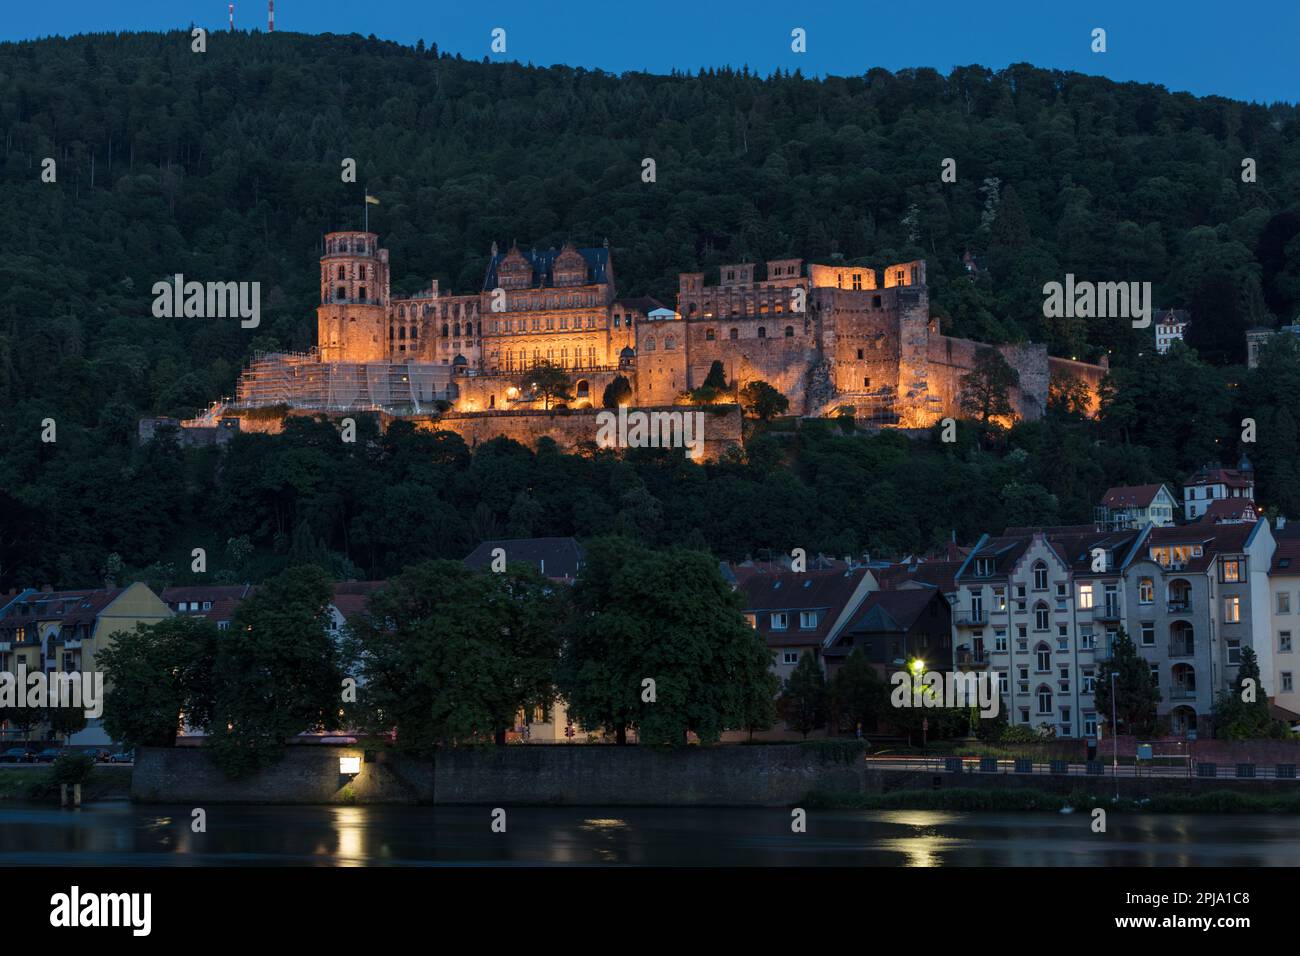 Pernottamento al Castello di Heidelberg sulla collina di Konigstuhl, un edificio rinascimentale gotico nella valle di Neckar che si affaccia sulla città vecchia e sul fiume Neckar. Heidelberg. Foto Stock